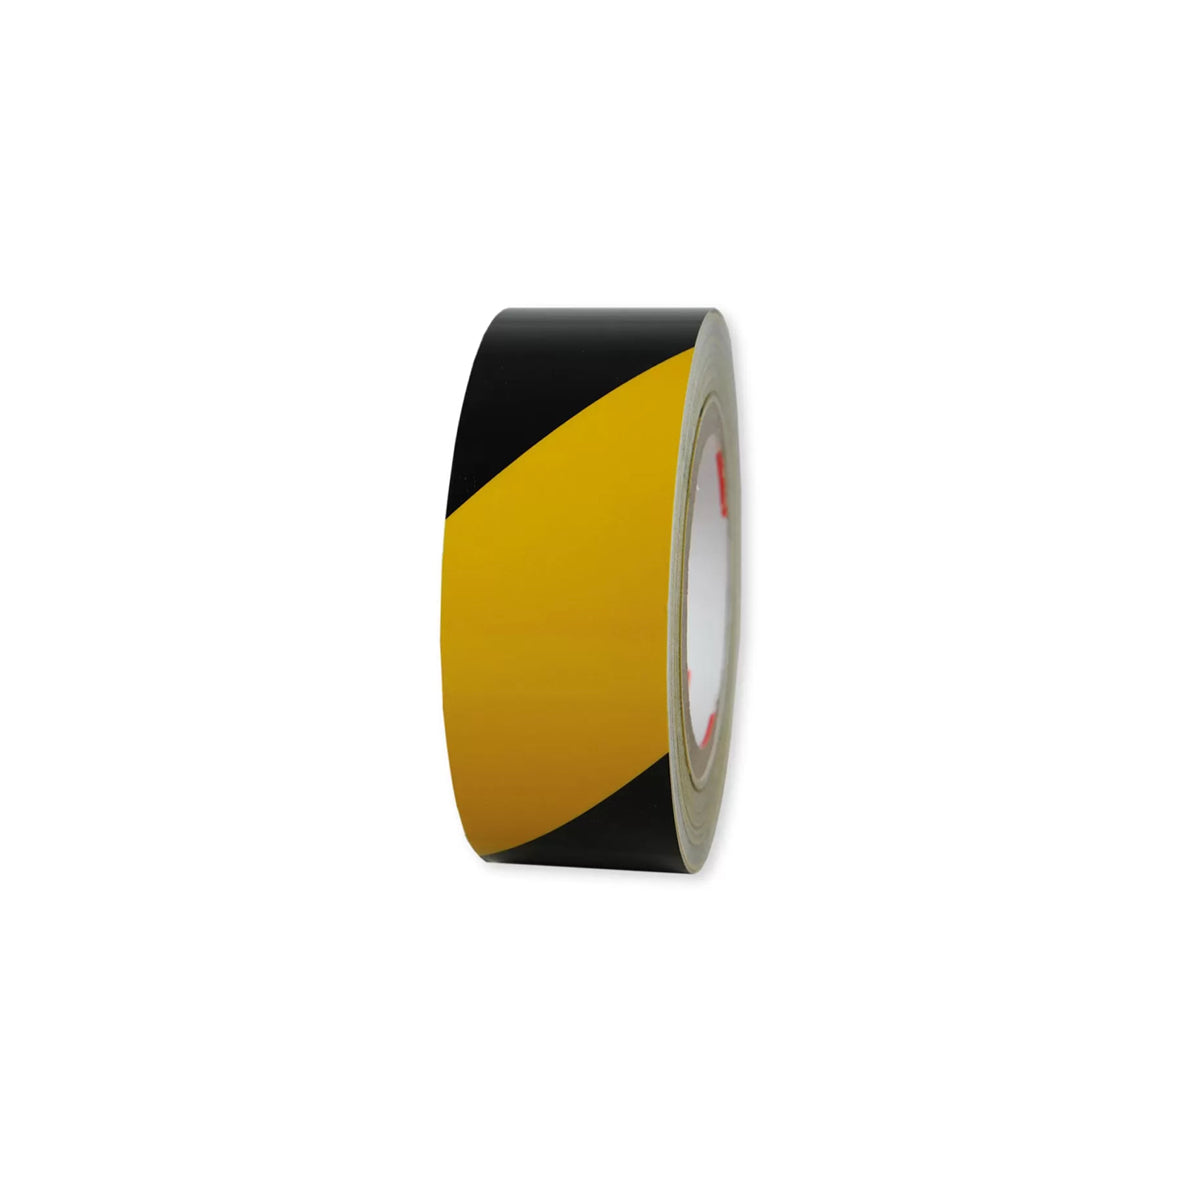 Warnmarkierungsband R1, für Fahrzeuge, R1, gelb-schwarz, 25 m x 50 mm, linksweisend